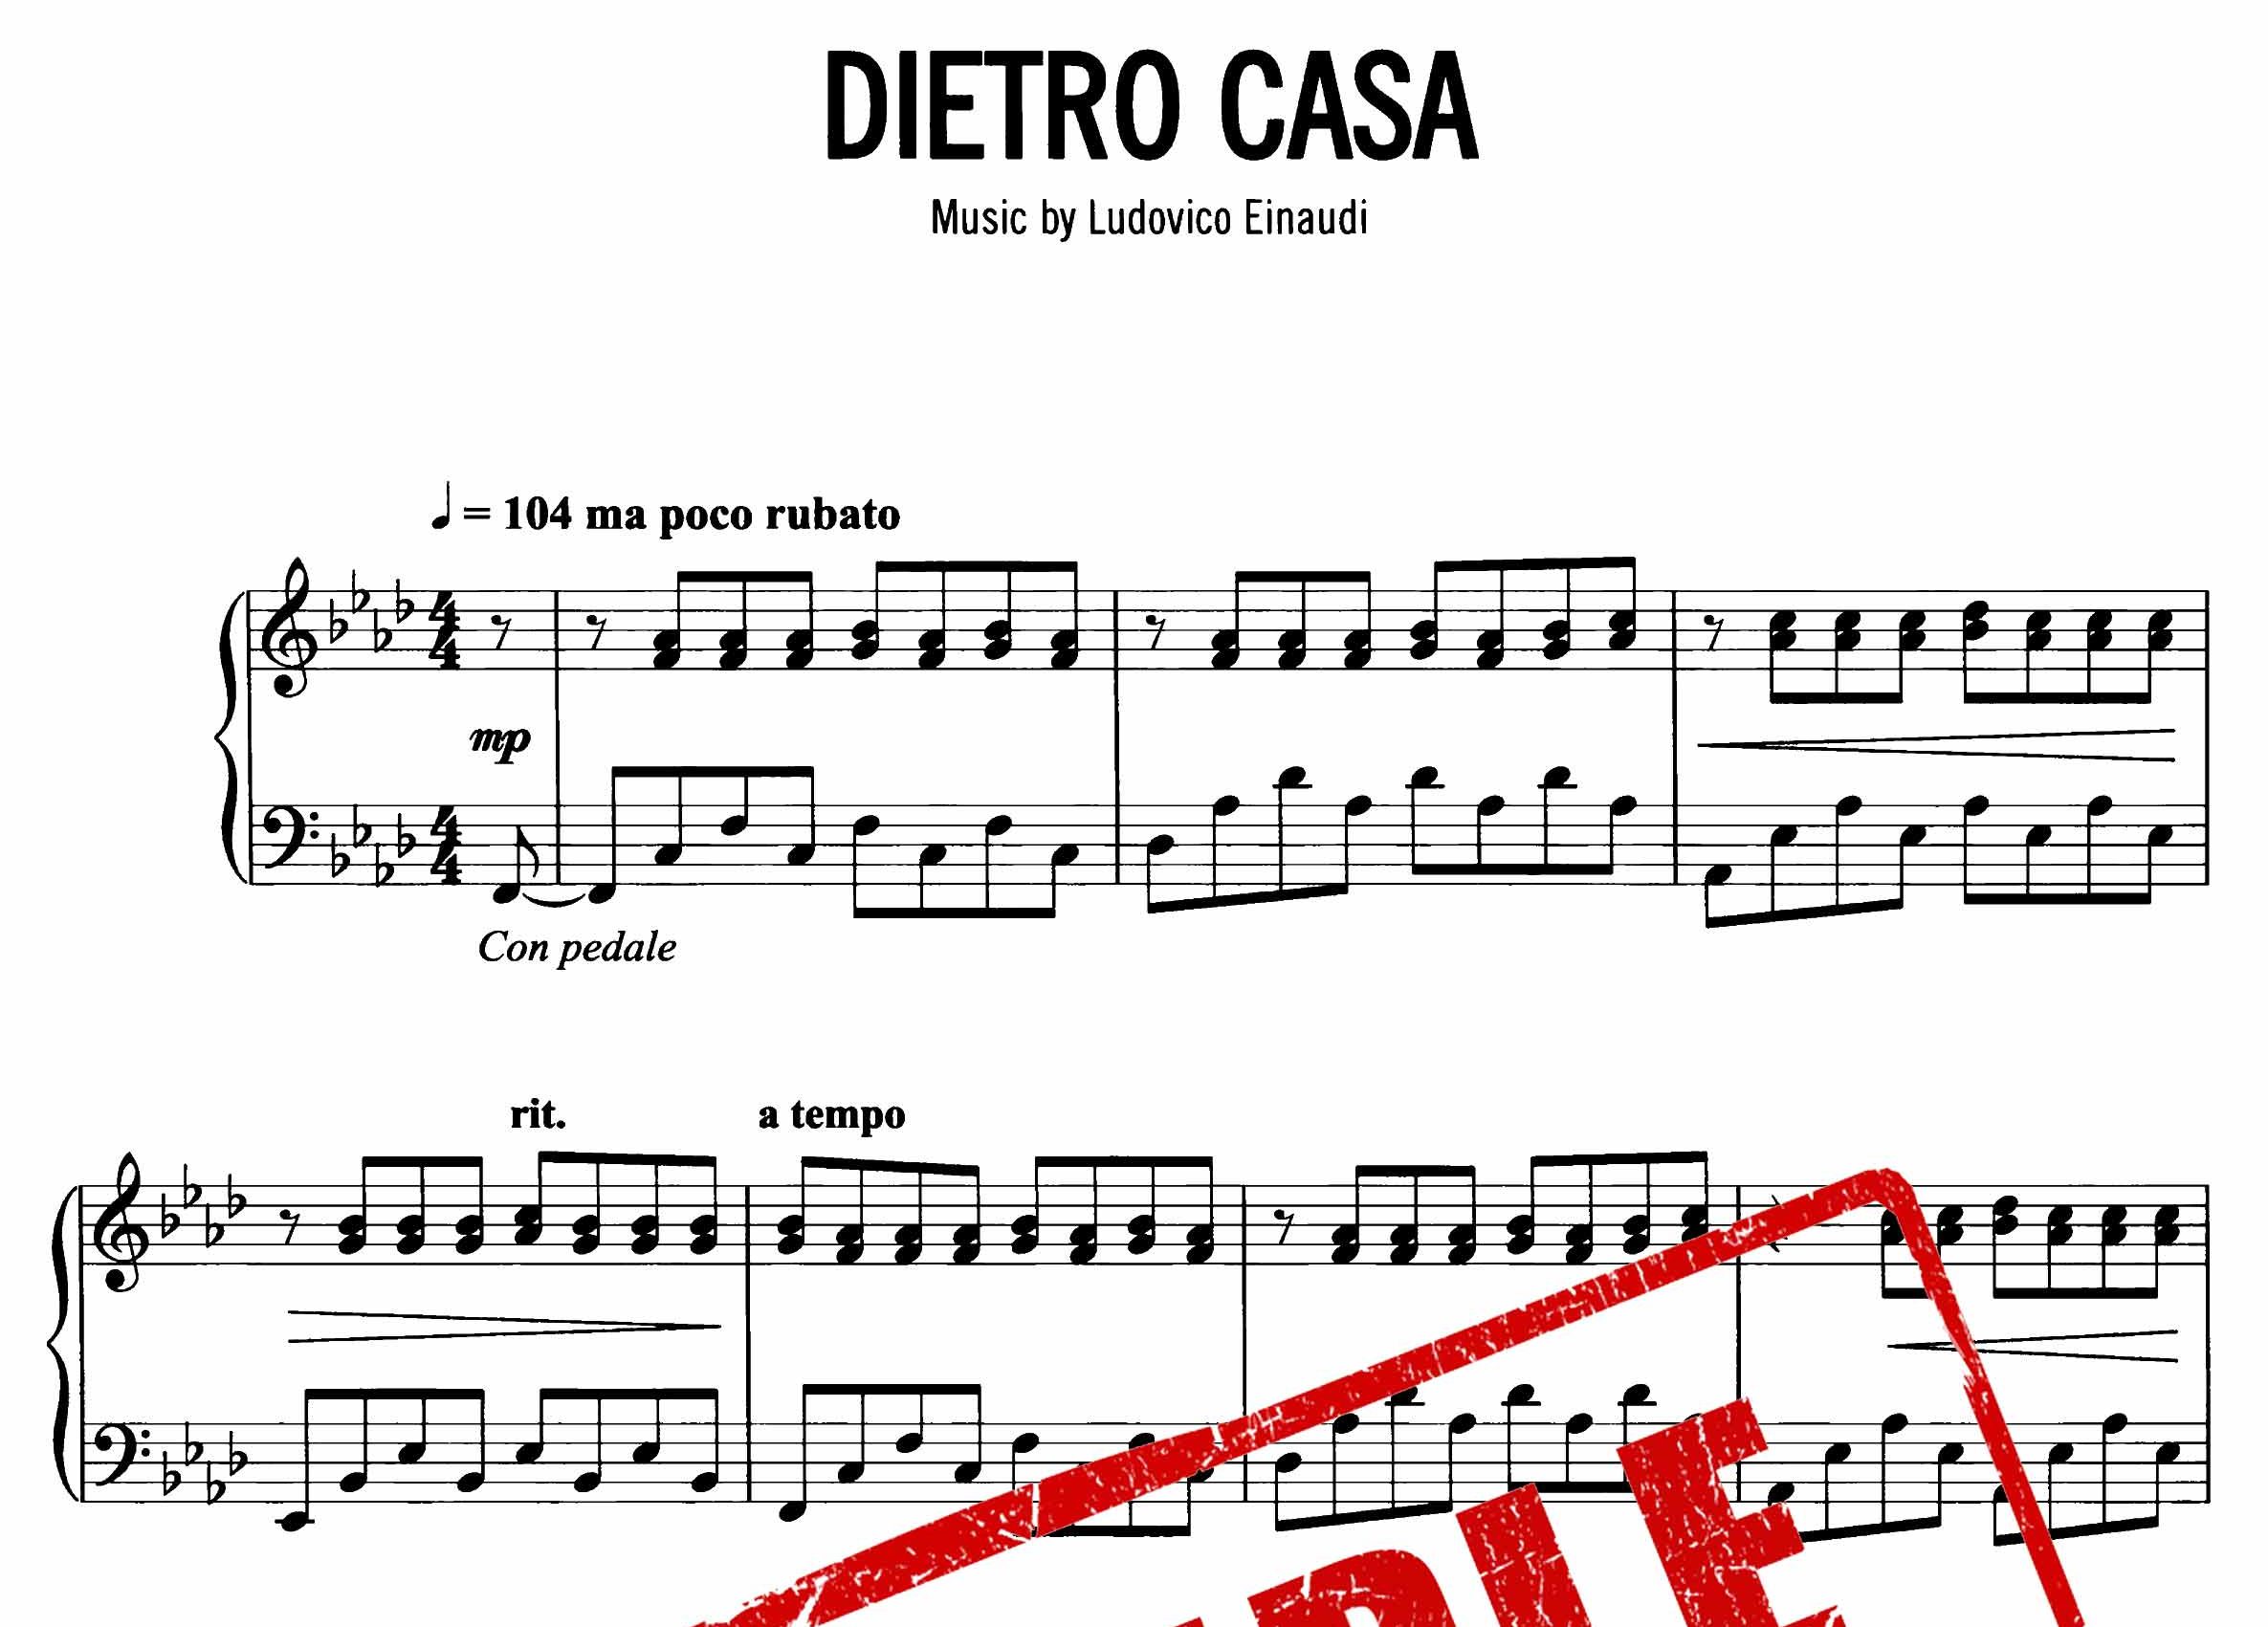 نت پیانوی Dietro Casa از لودویکو اناودی